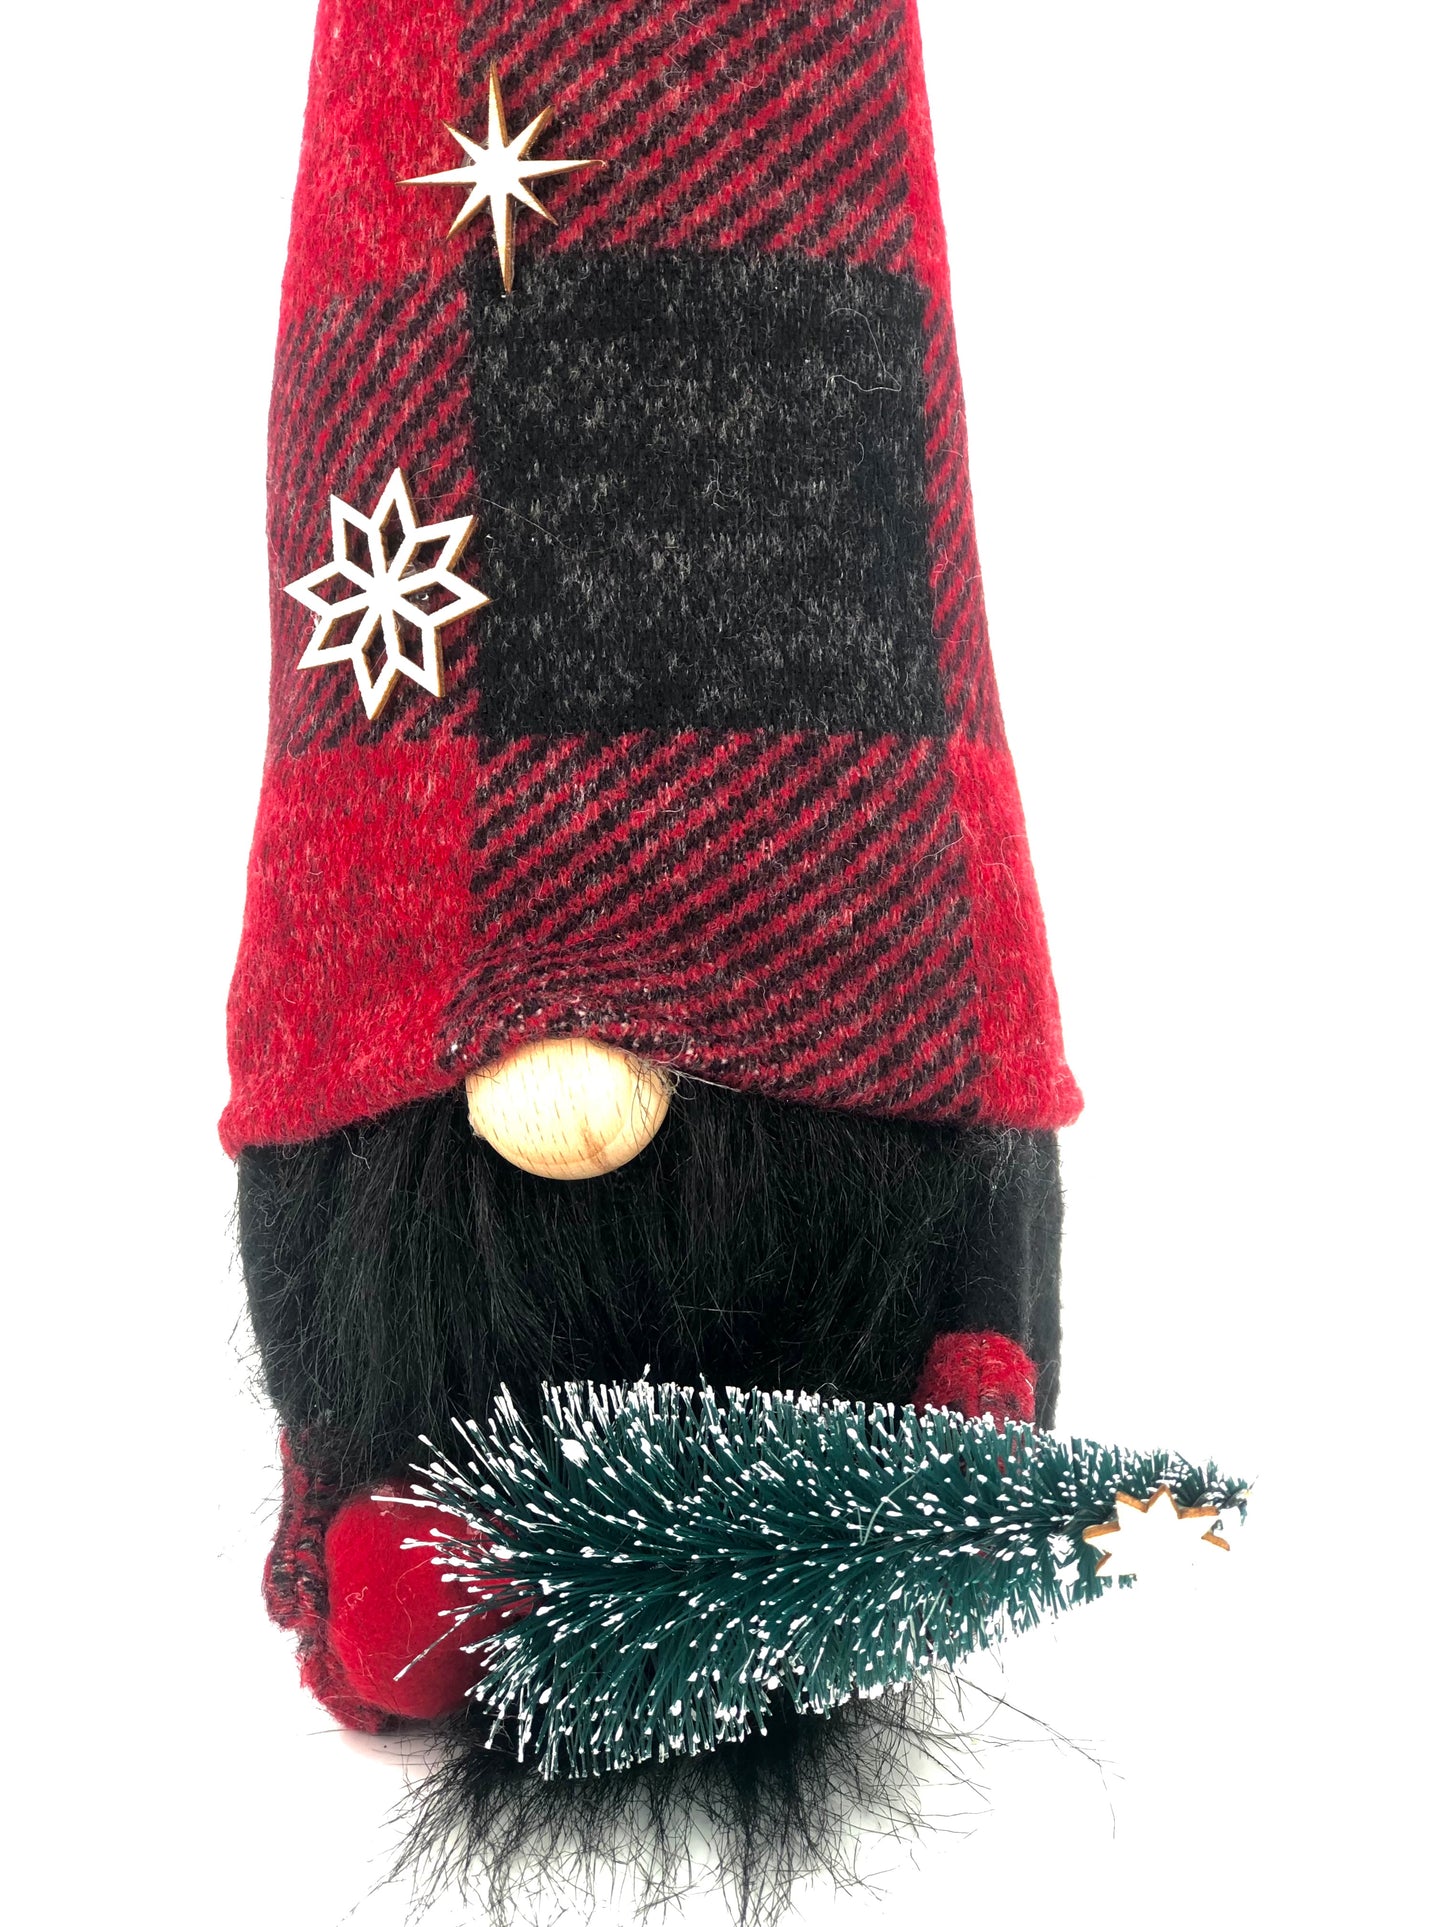 Gnome sapin - collection de Noël